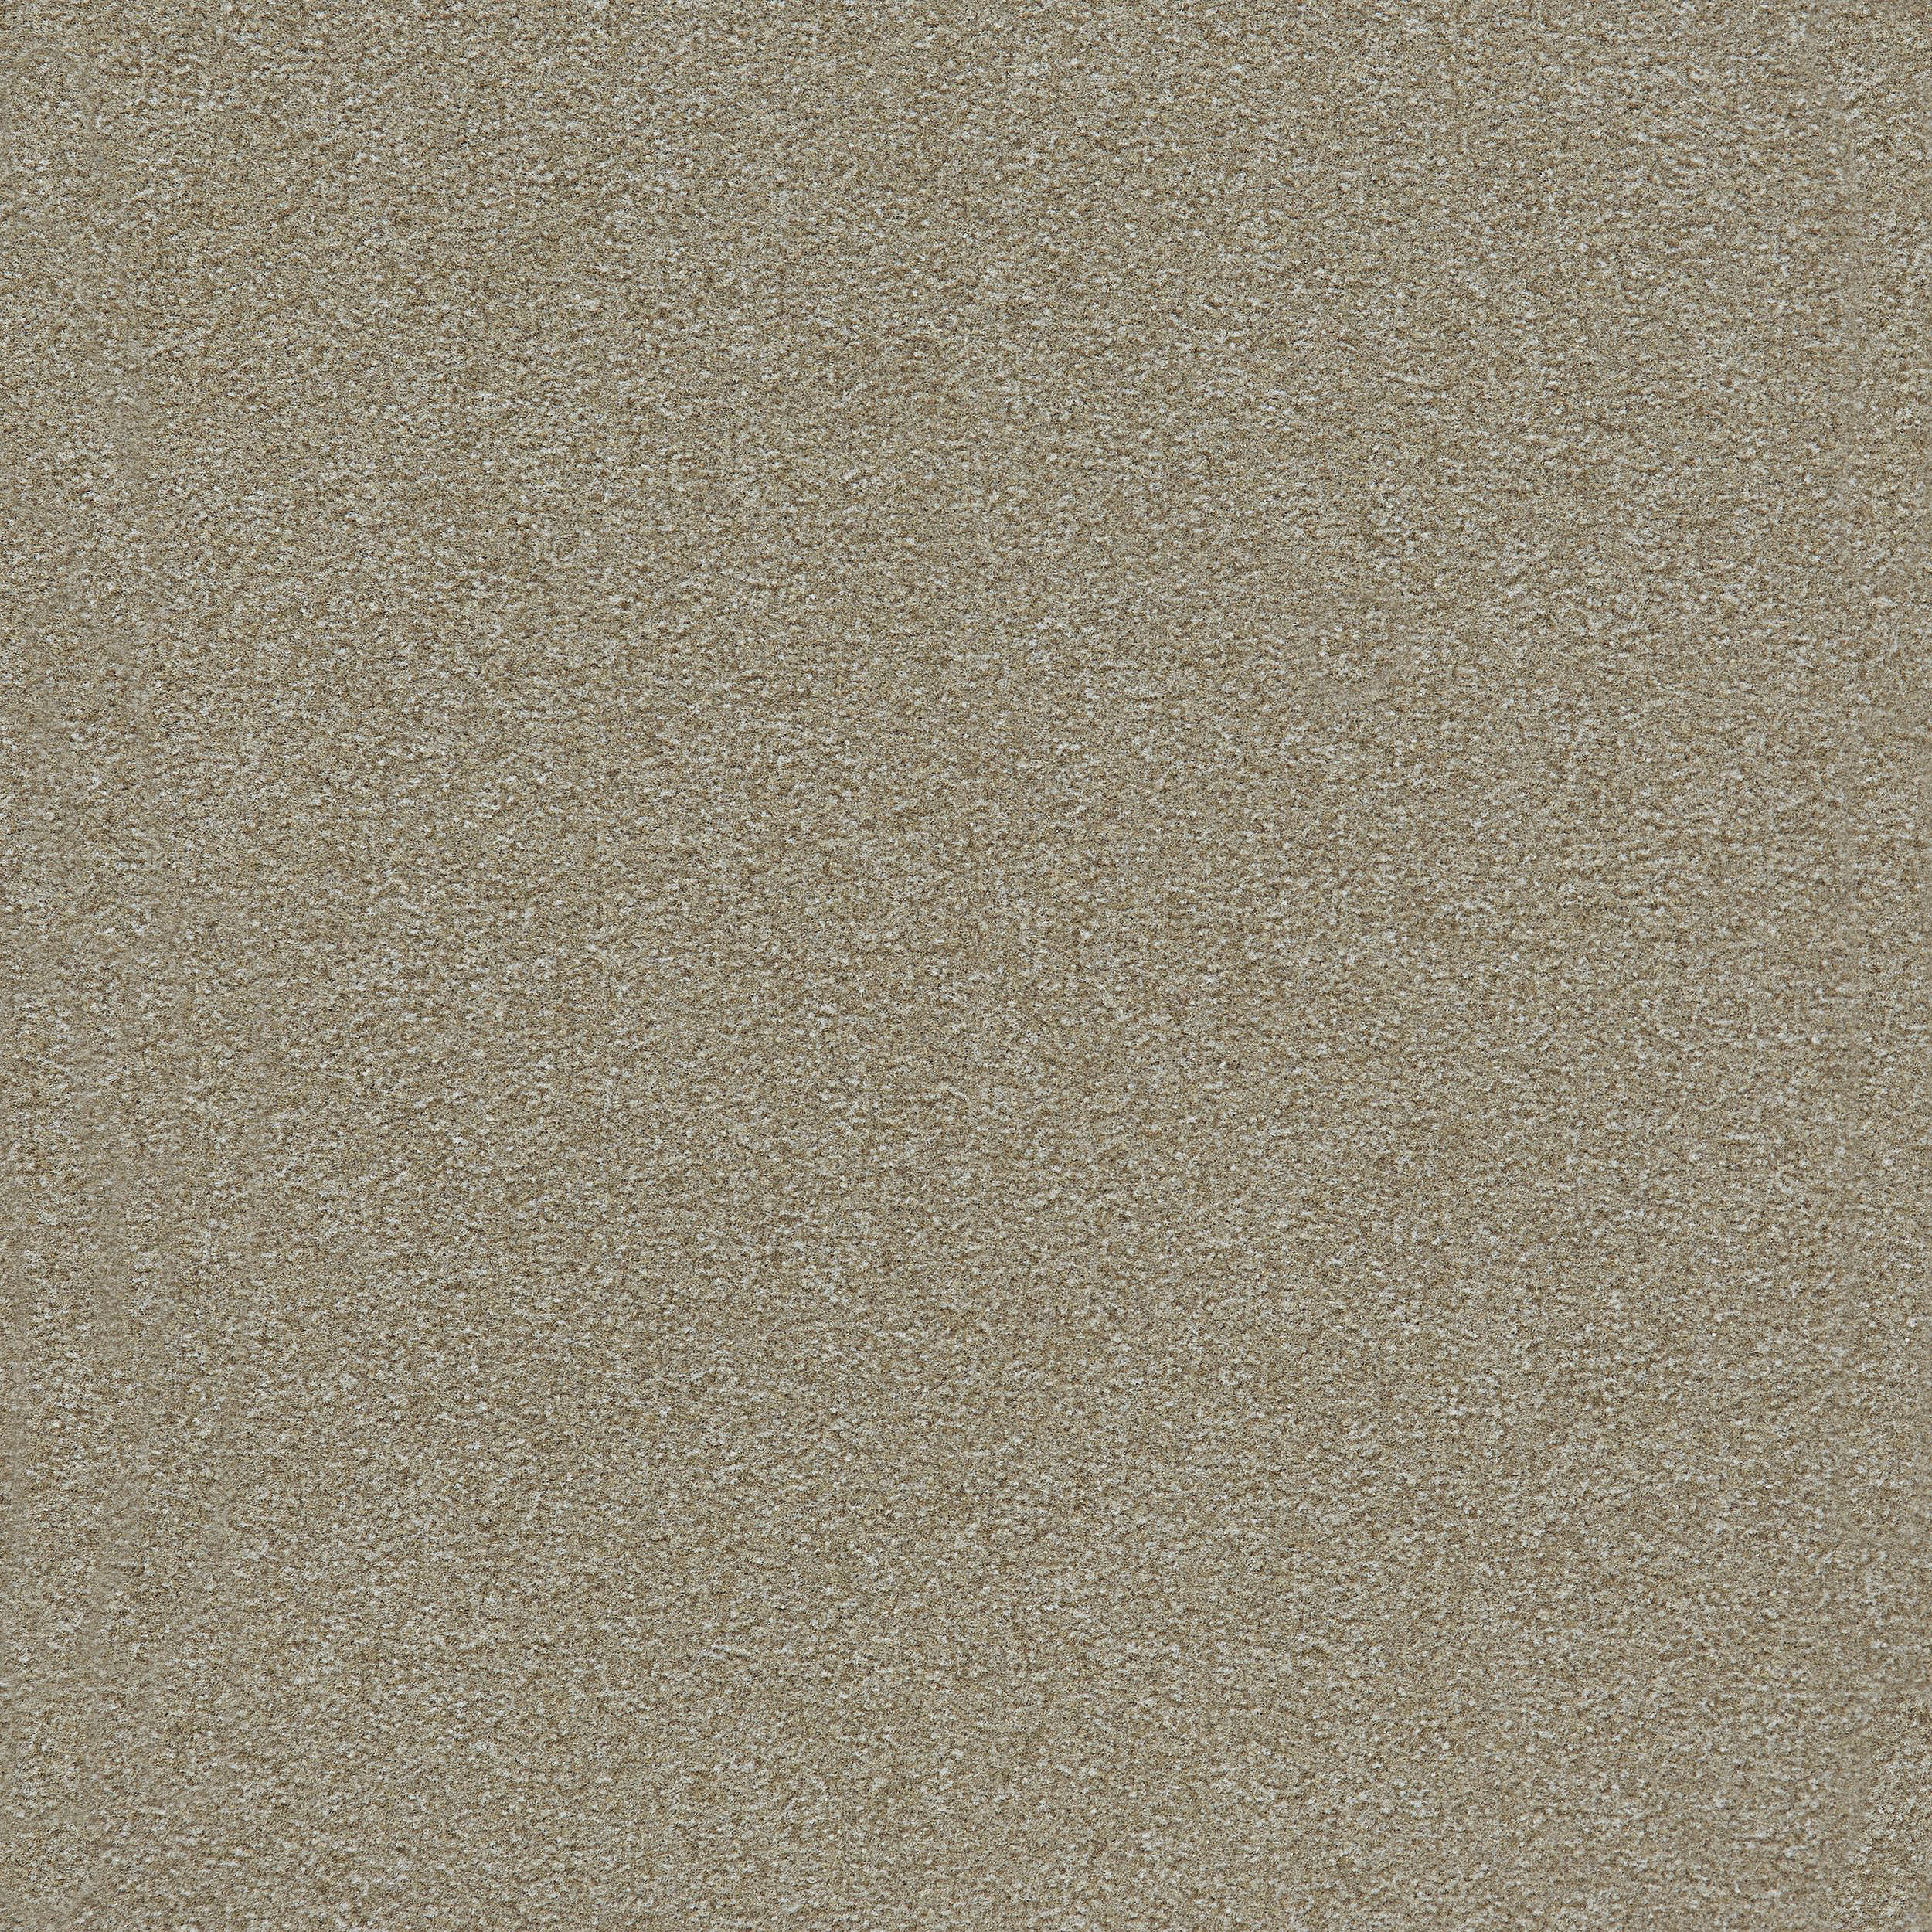 Heuga 725 Carpet Tile In Oyster Bildnummer 7